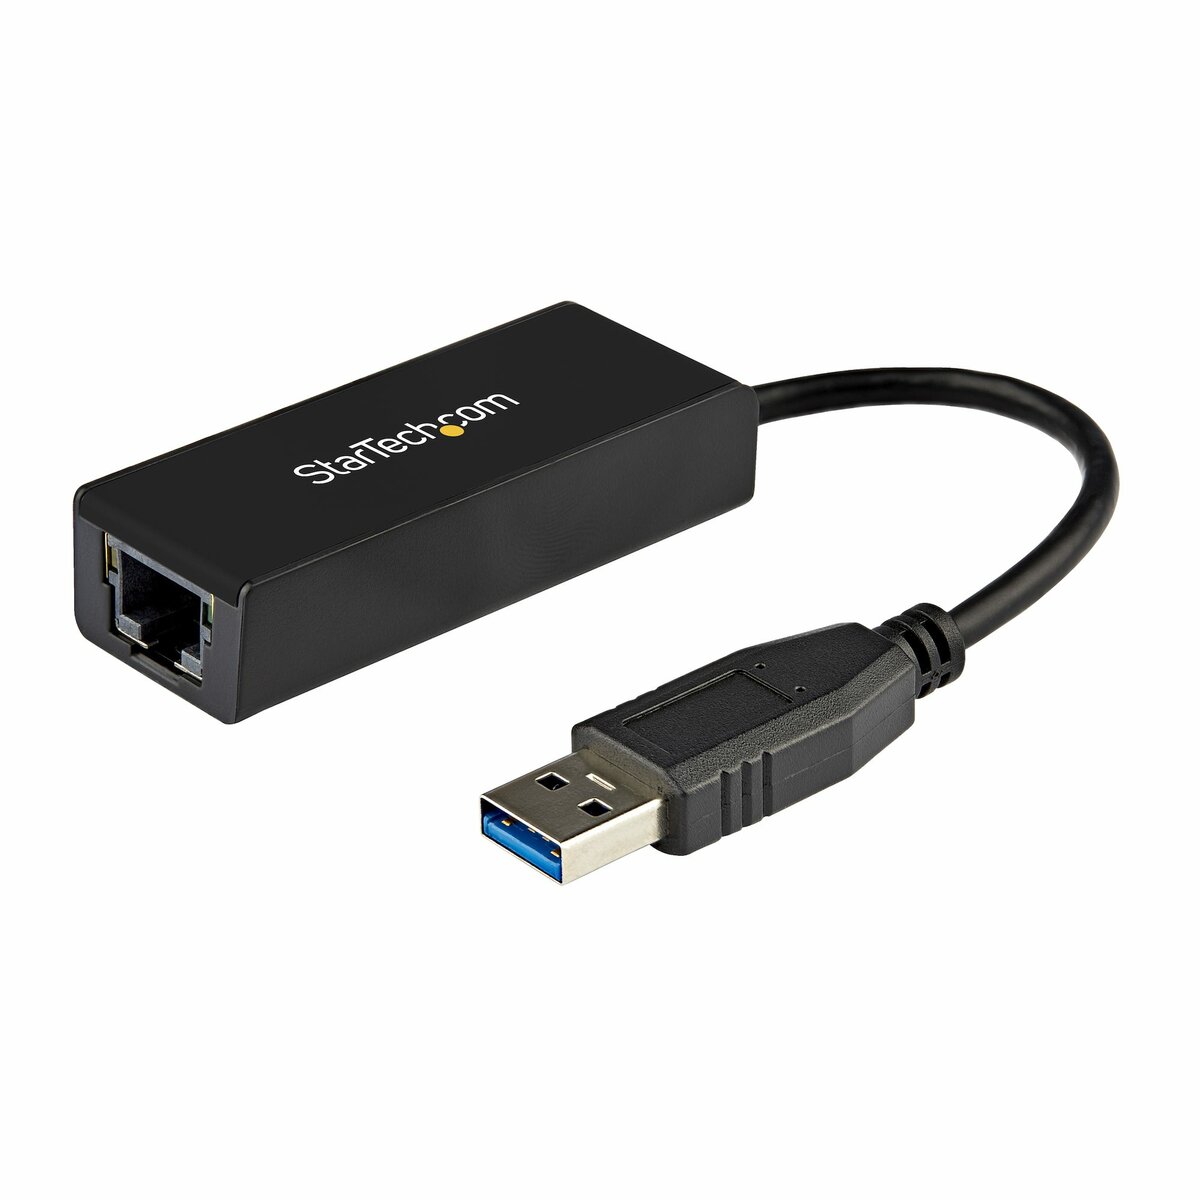 StarTech.com Adaptateur USB 3.0 Ethernet Gigabit - Câble intégré -  Convertisseur réseau USB 3 à 1 port RJ45 GbE - Noir (USB31000S)